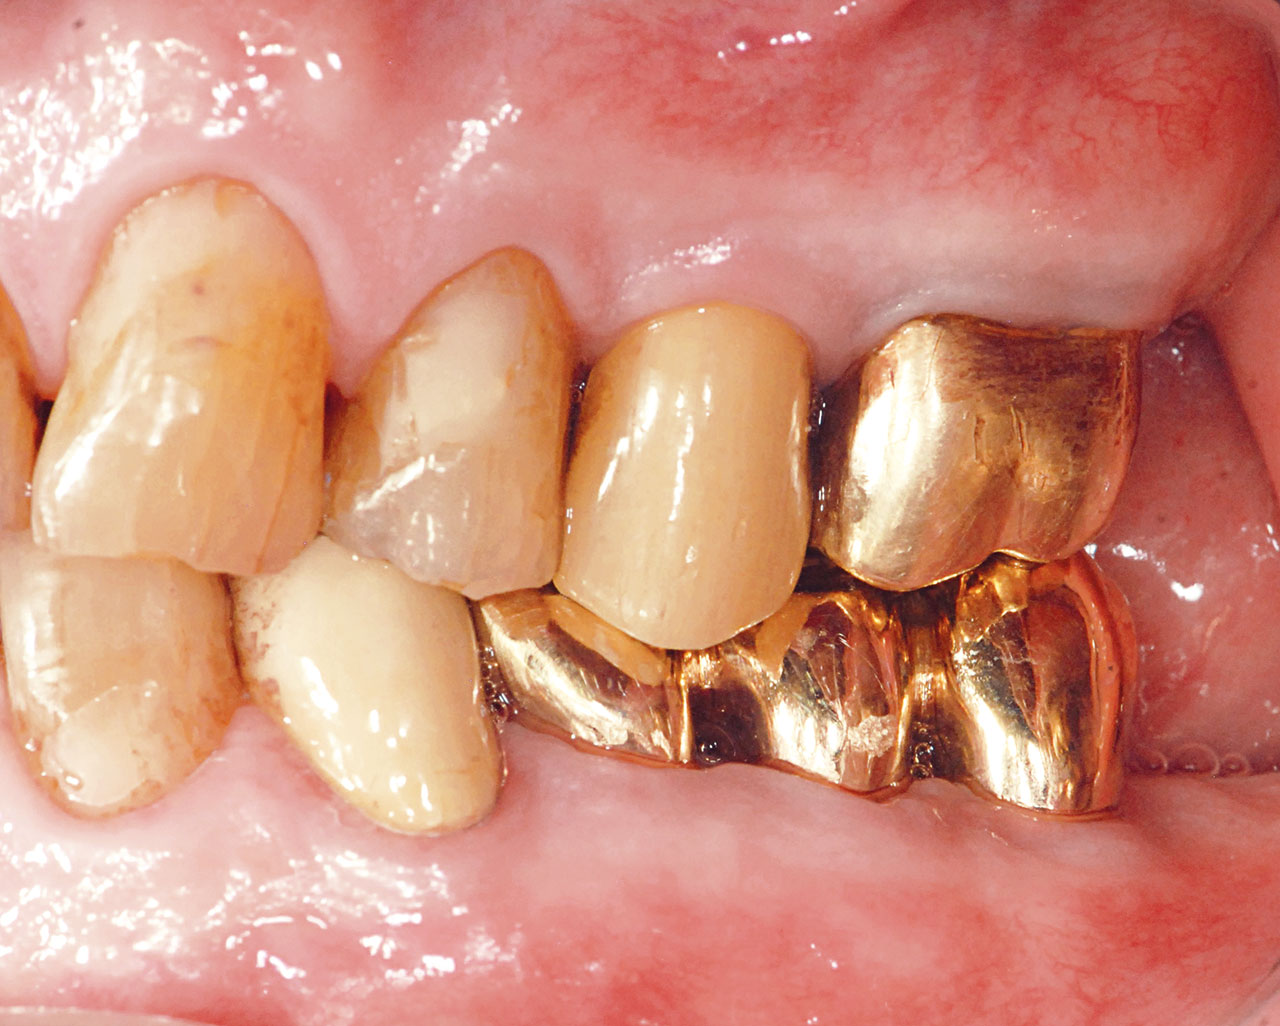 Abb. 7d Klinische Situation nach prothetischer Versorgung des prämolarisierten Zahnes 36 und des Zahnes 35 mit verblockten Goldkronen sowie Verblockung des hemisezierten Zahnes 47 mit dem Zahn 46.